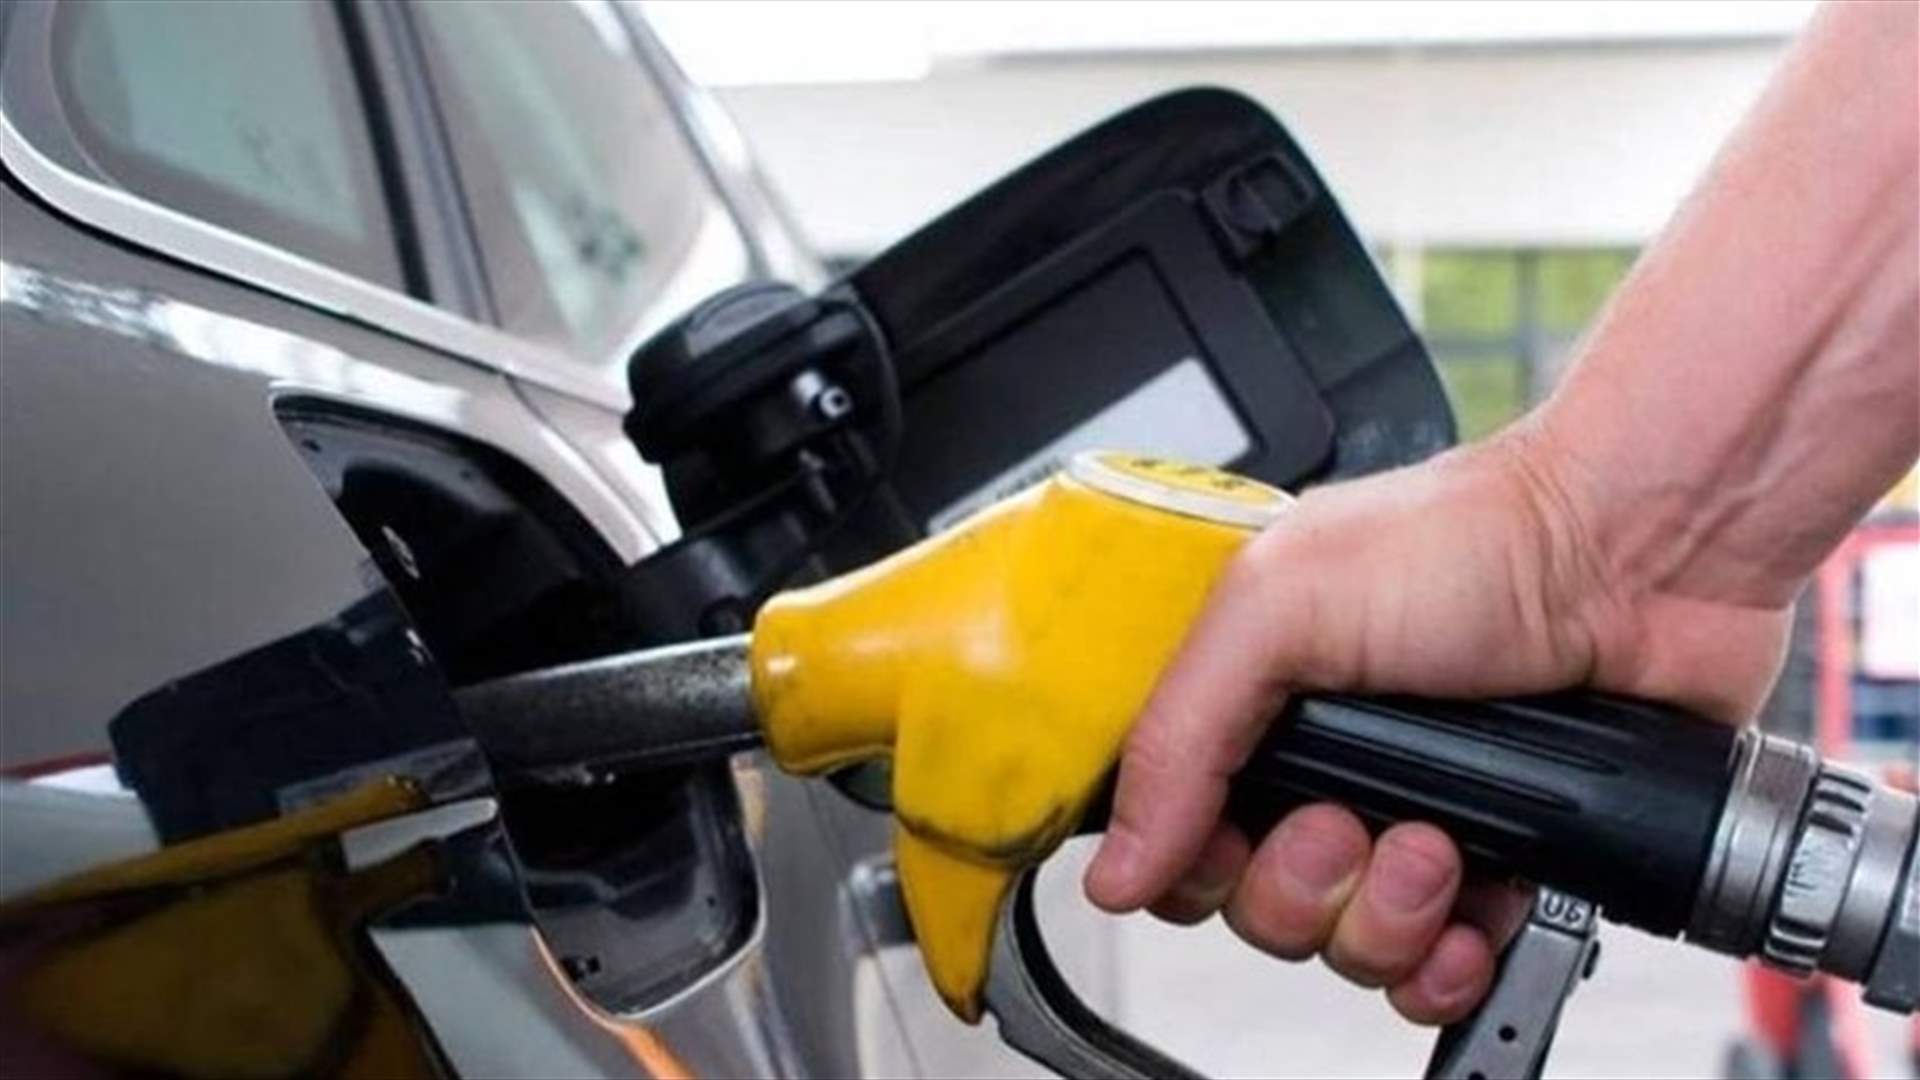 ارتفاع بسعر البنزين وانخفاض بسعري المازوت والغاز...